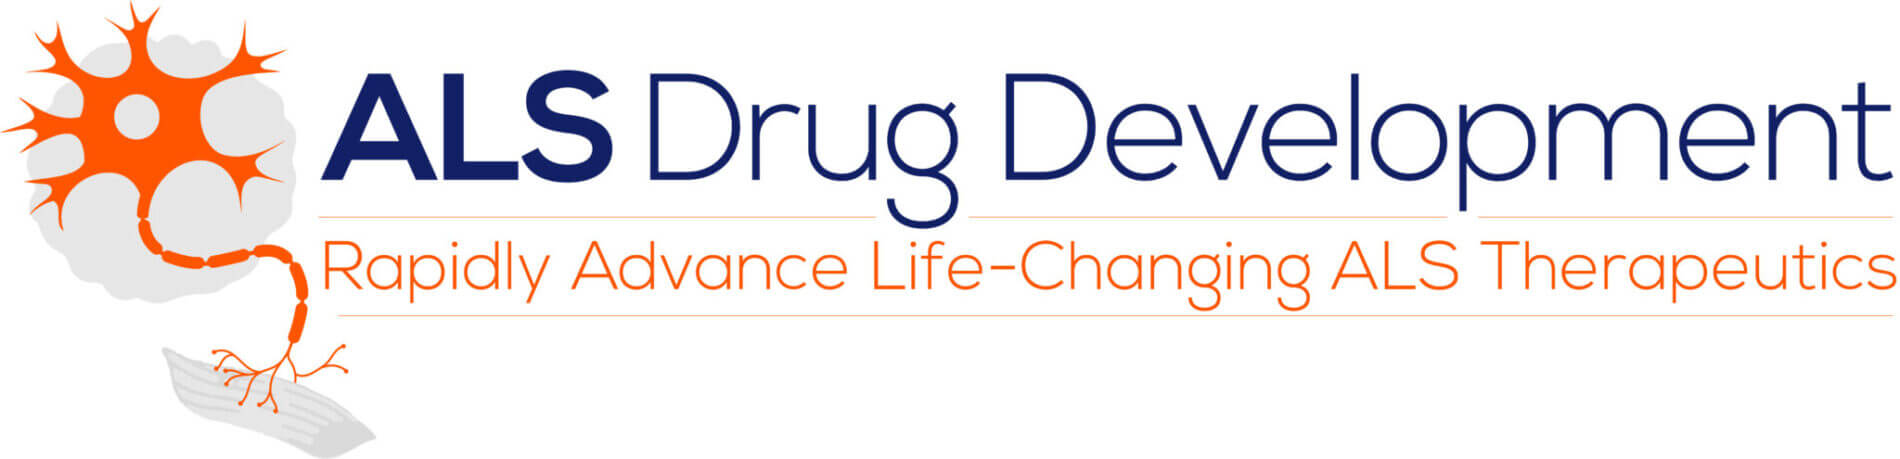 ALS-Drug-Development-Summit-logo-NEW-002-2048x495